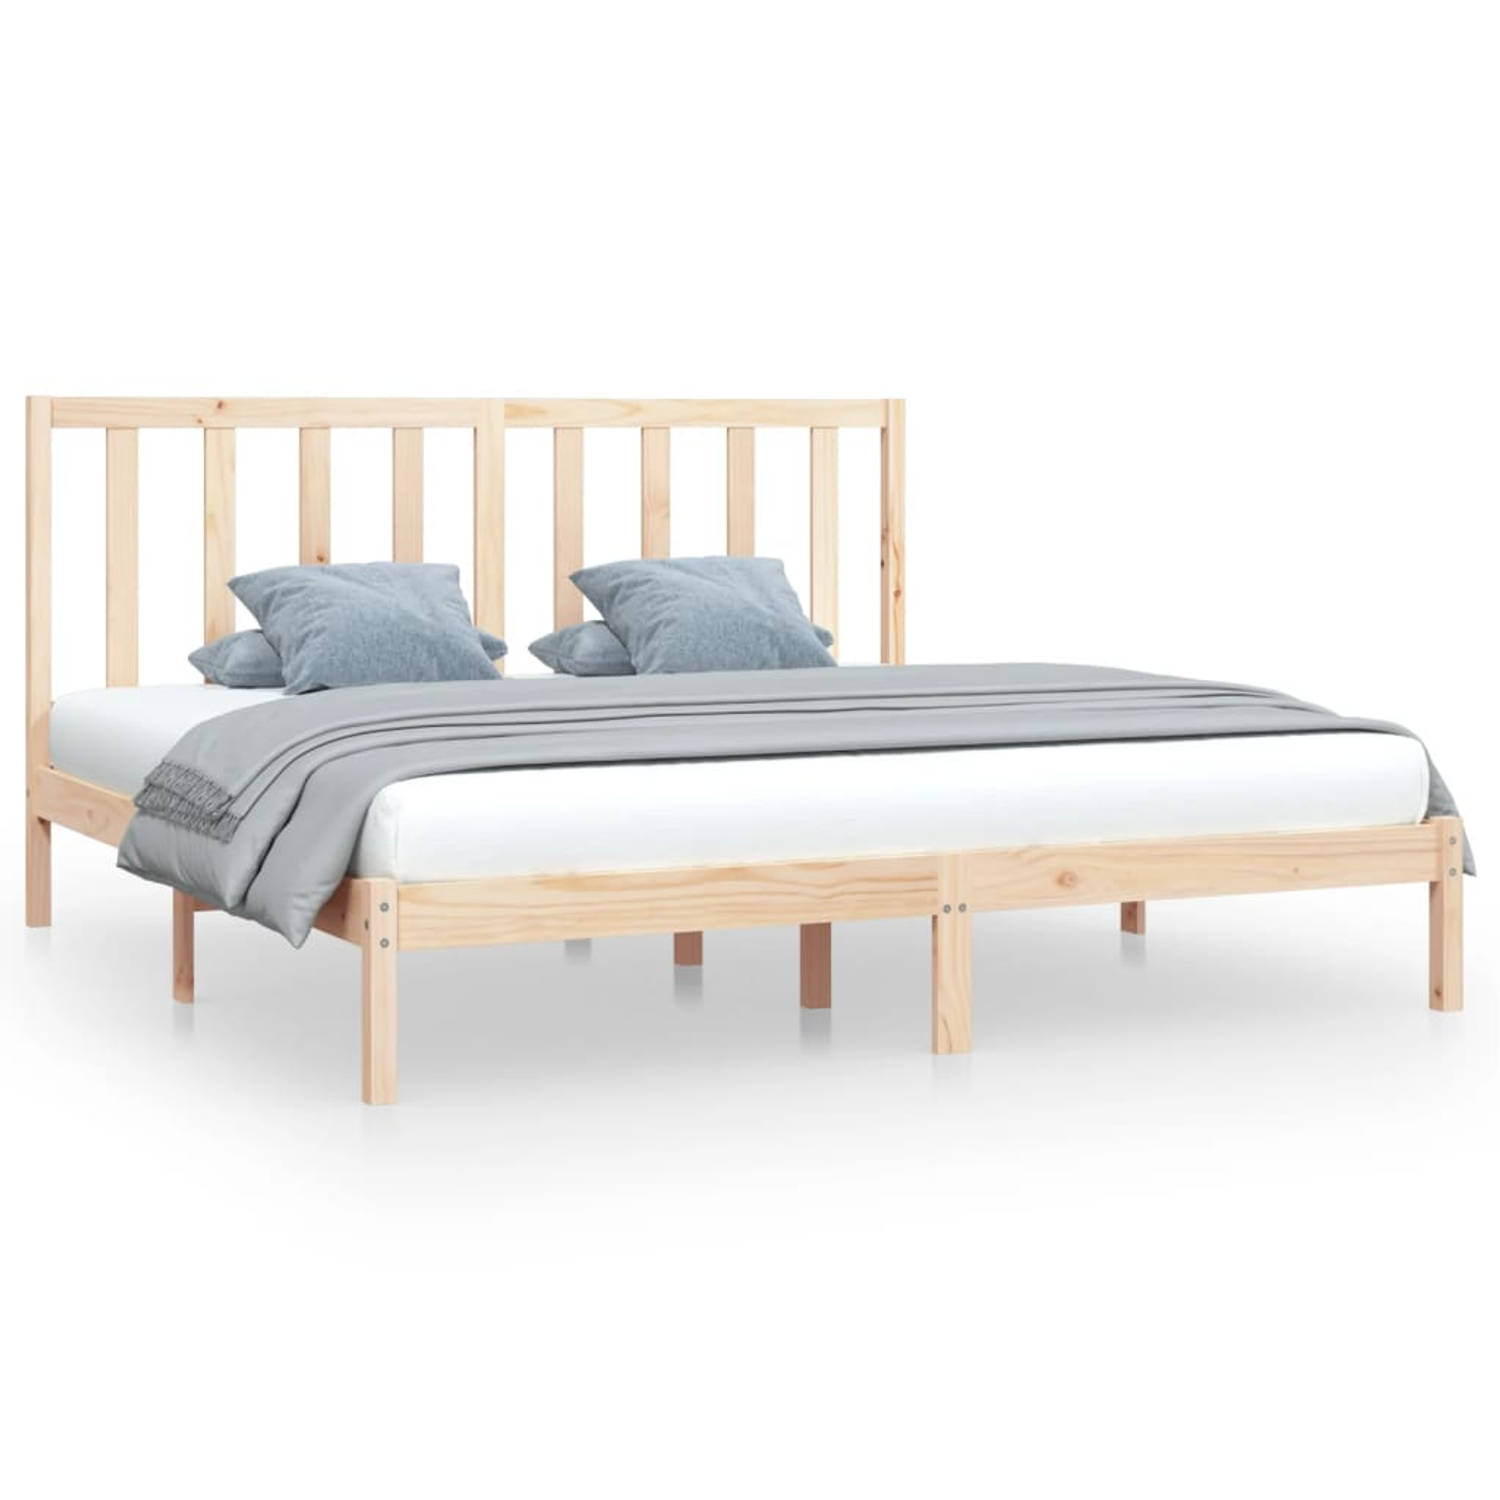 The Living Store Bedframe massief grenenhout 200x200 cm - Bedframe - Bedframes - Bed - Bedbodem - Ledikant - Bed Frame - Massief Houten Bedframe - Slaapmeubel - Bedden - Bedbodems